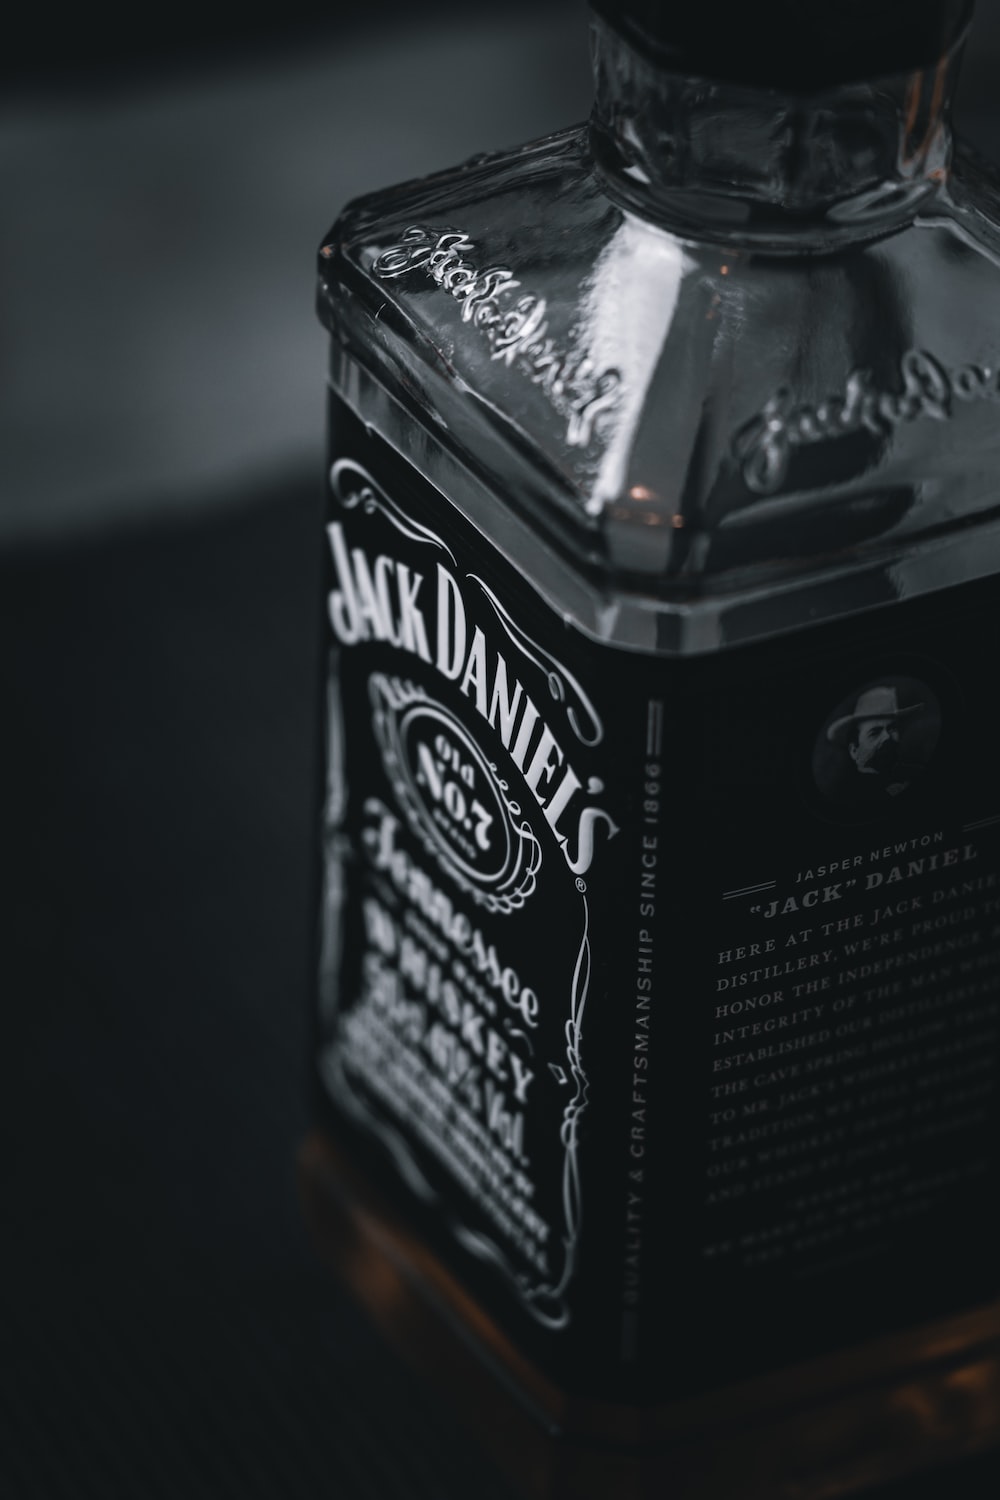 A História do Whisky Jack Daniel’s: Da Destilaria de Lynchburg à Inovação do Jack Daniel’s Honey